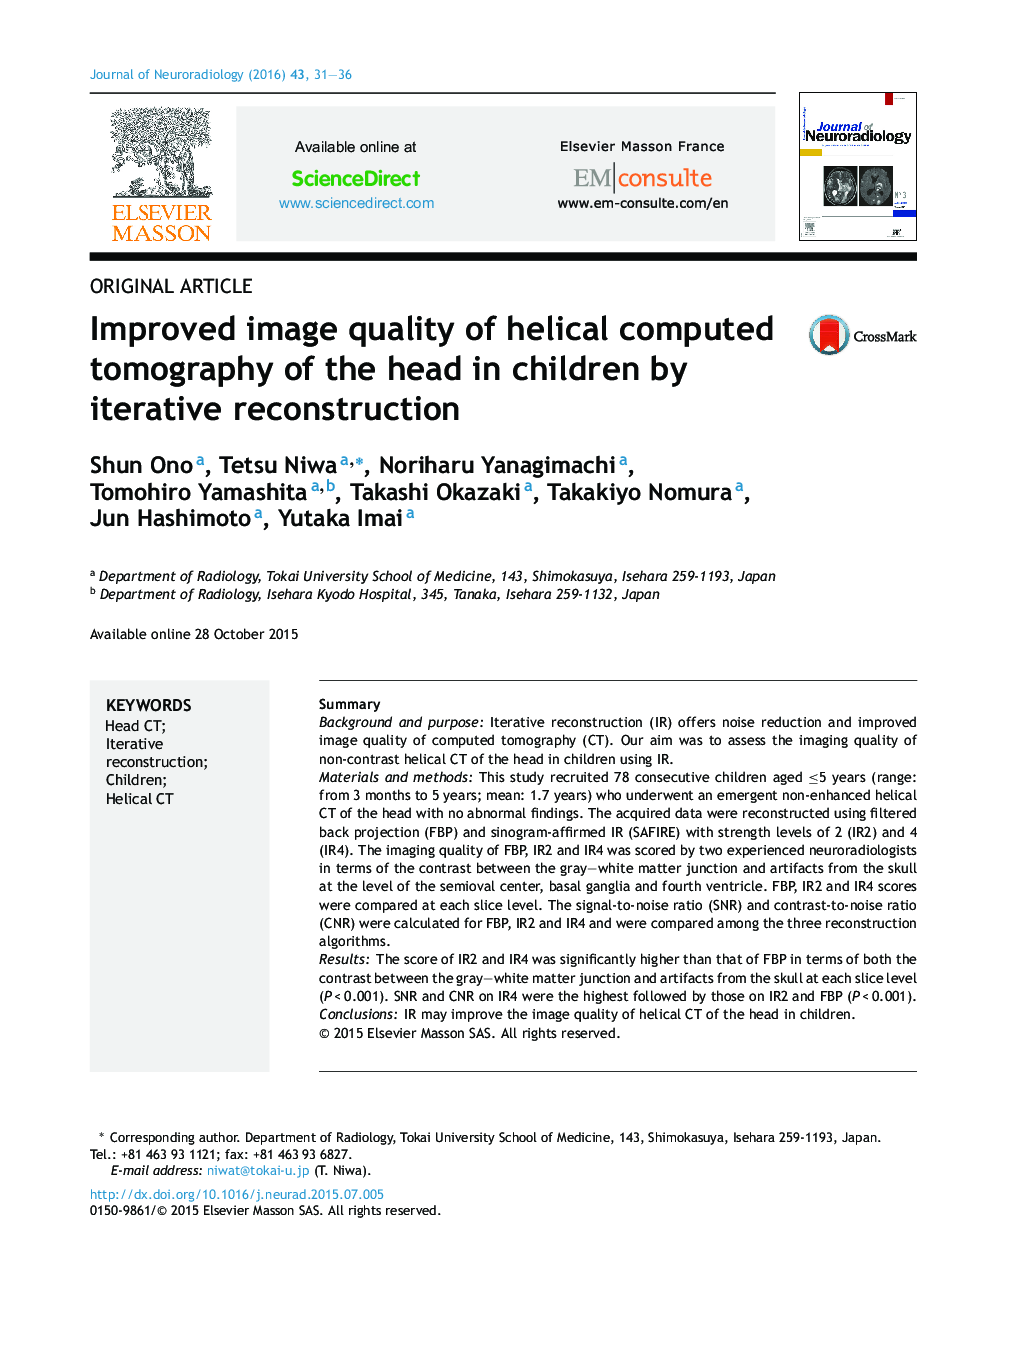 بهبود کیفیت تصویر سی تی اسکن سیلیکونی اسپری سر در کودکان با بازسازی تکراری 